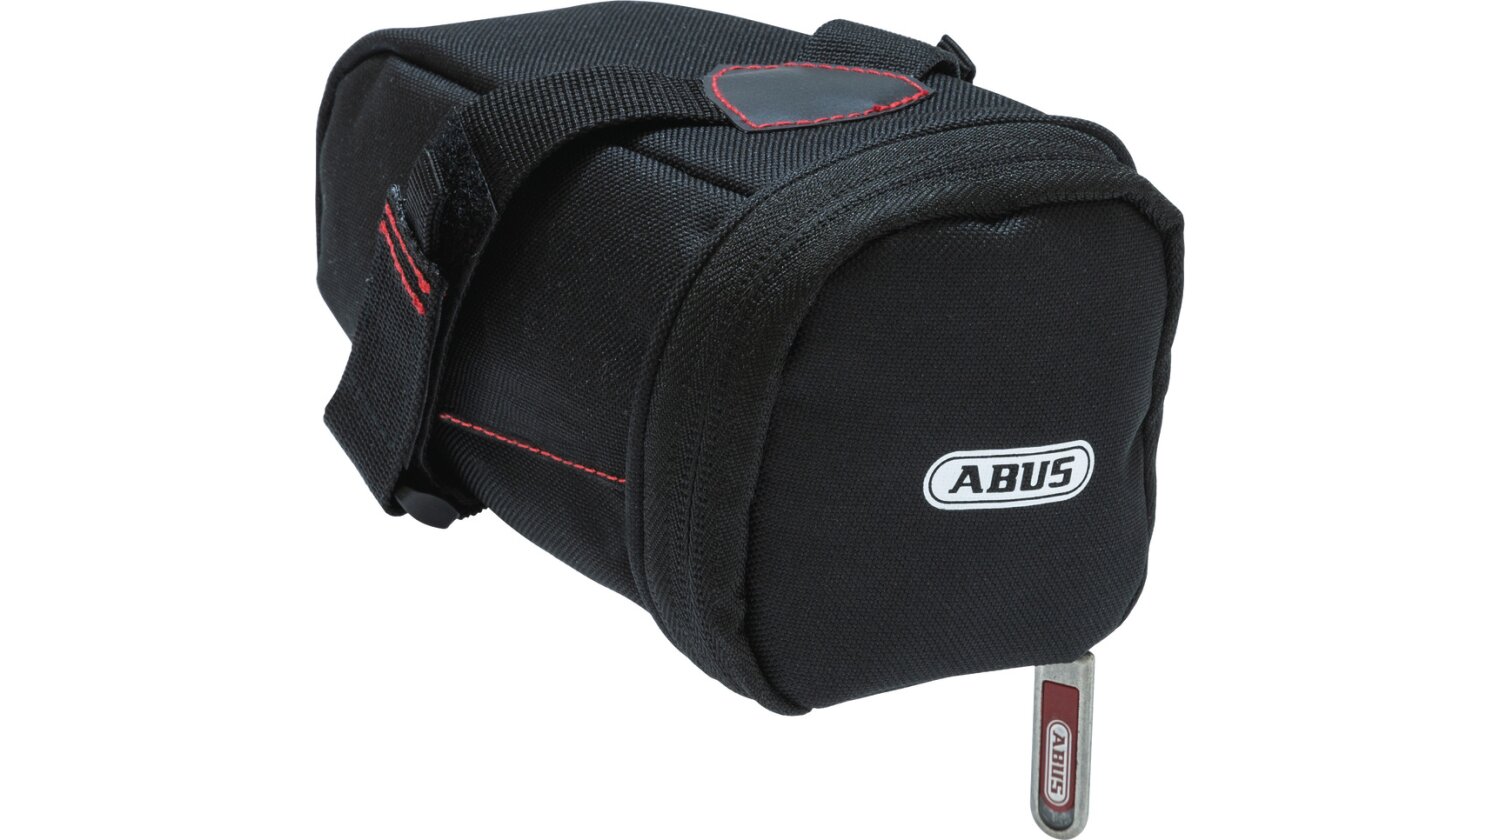 Abus Rahmenschloss mit Tasche + Kette Pro Shield 5950NR+6KS+ST5950, schwarz